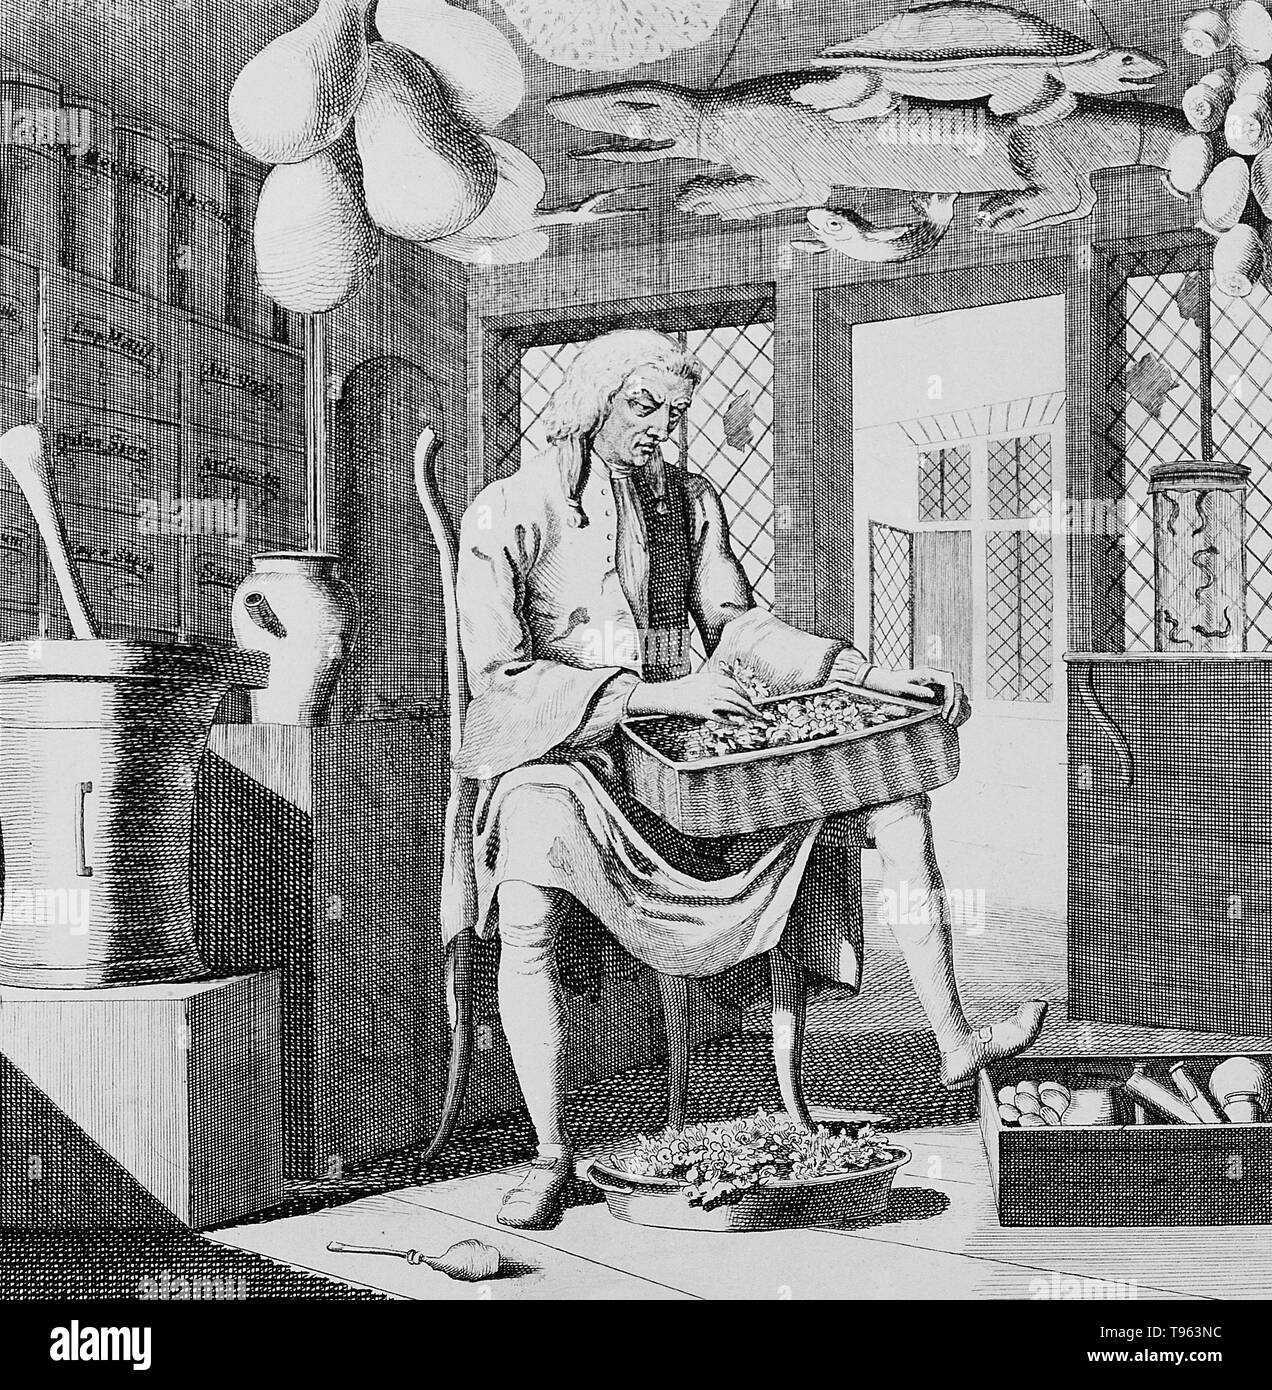 Un apothicaire assis dans sa boutique, tri par le biais de materia medica, entouré d'instruments de sa profession. Alligator Note sur plafond. Alligators ont été fréquemment accrochés aux plafonds de l'officine, un symbole de la profession. Gravure par le Dr Rock, c.1750. Banque D'Images